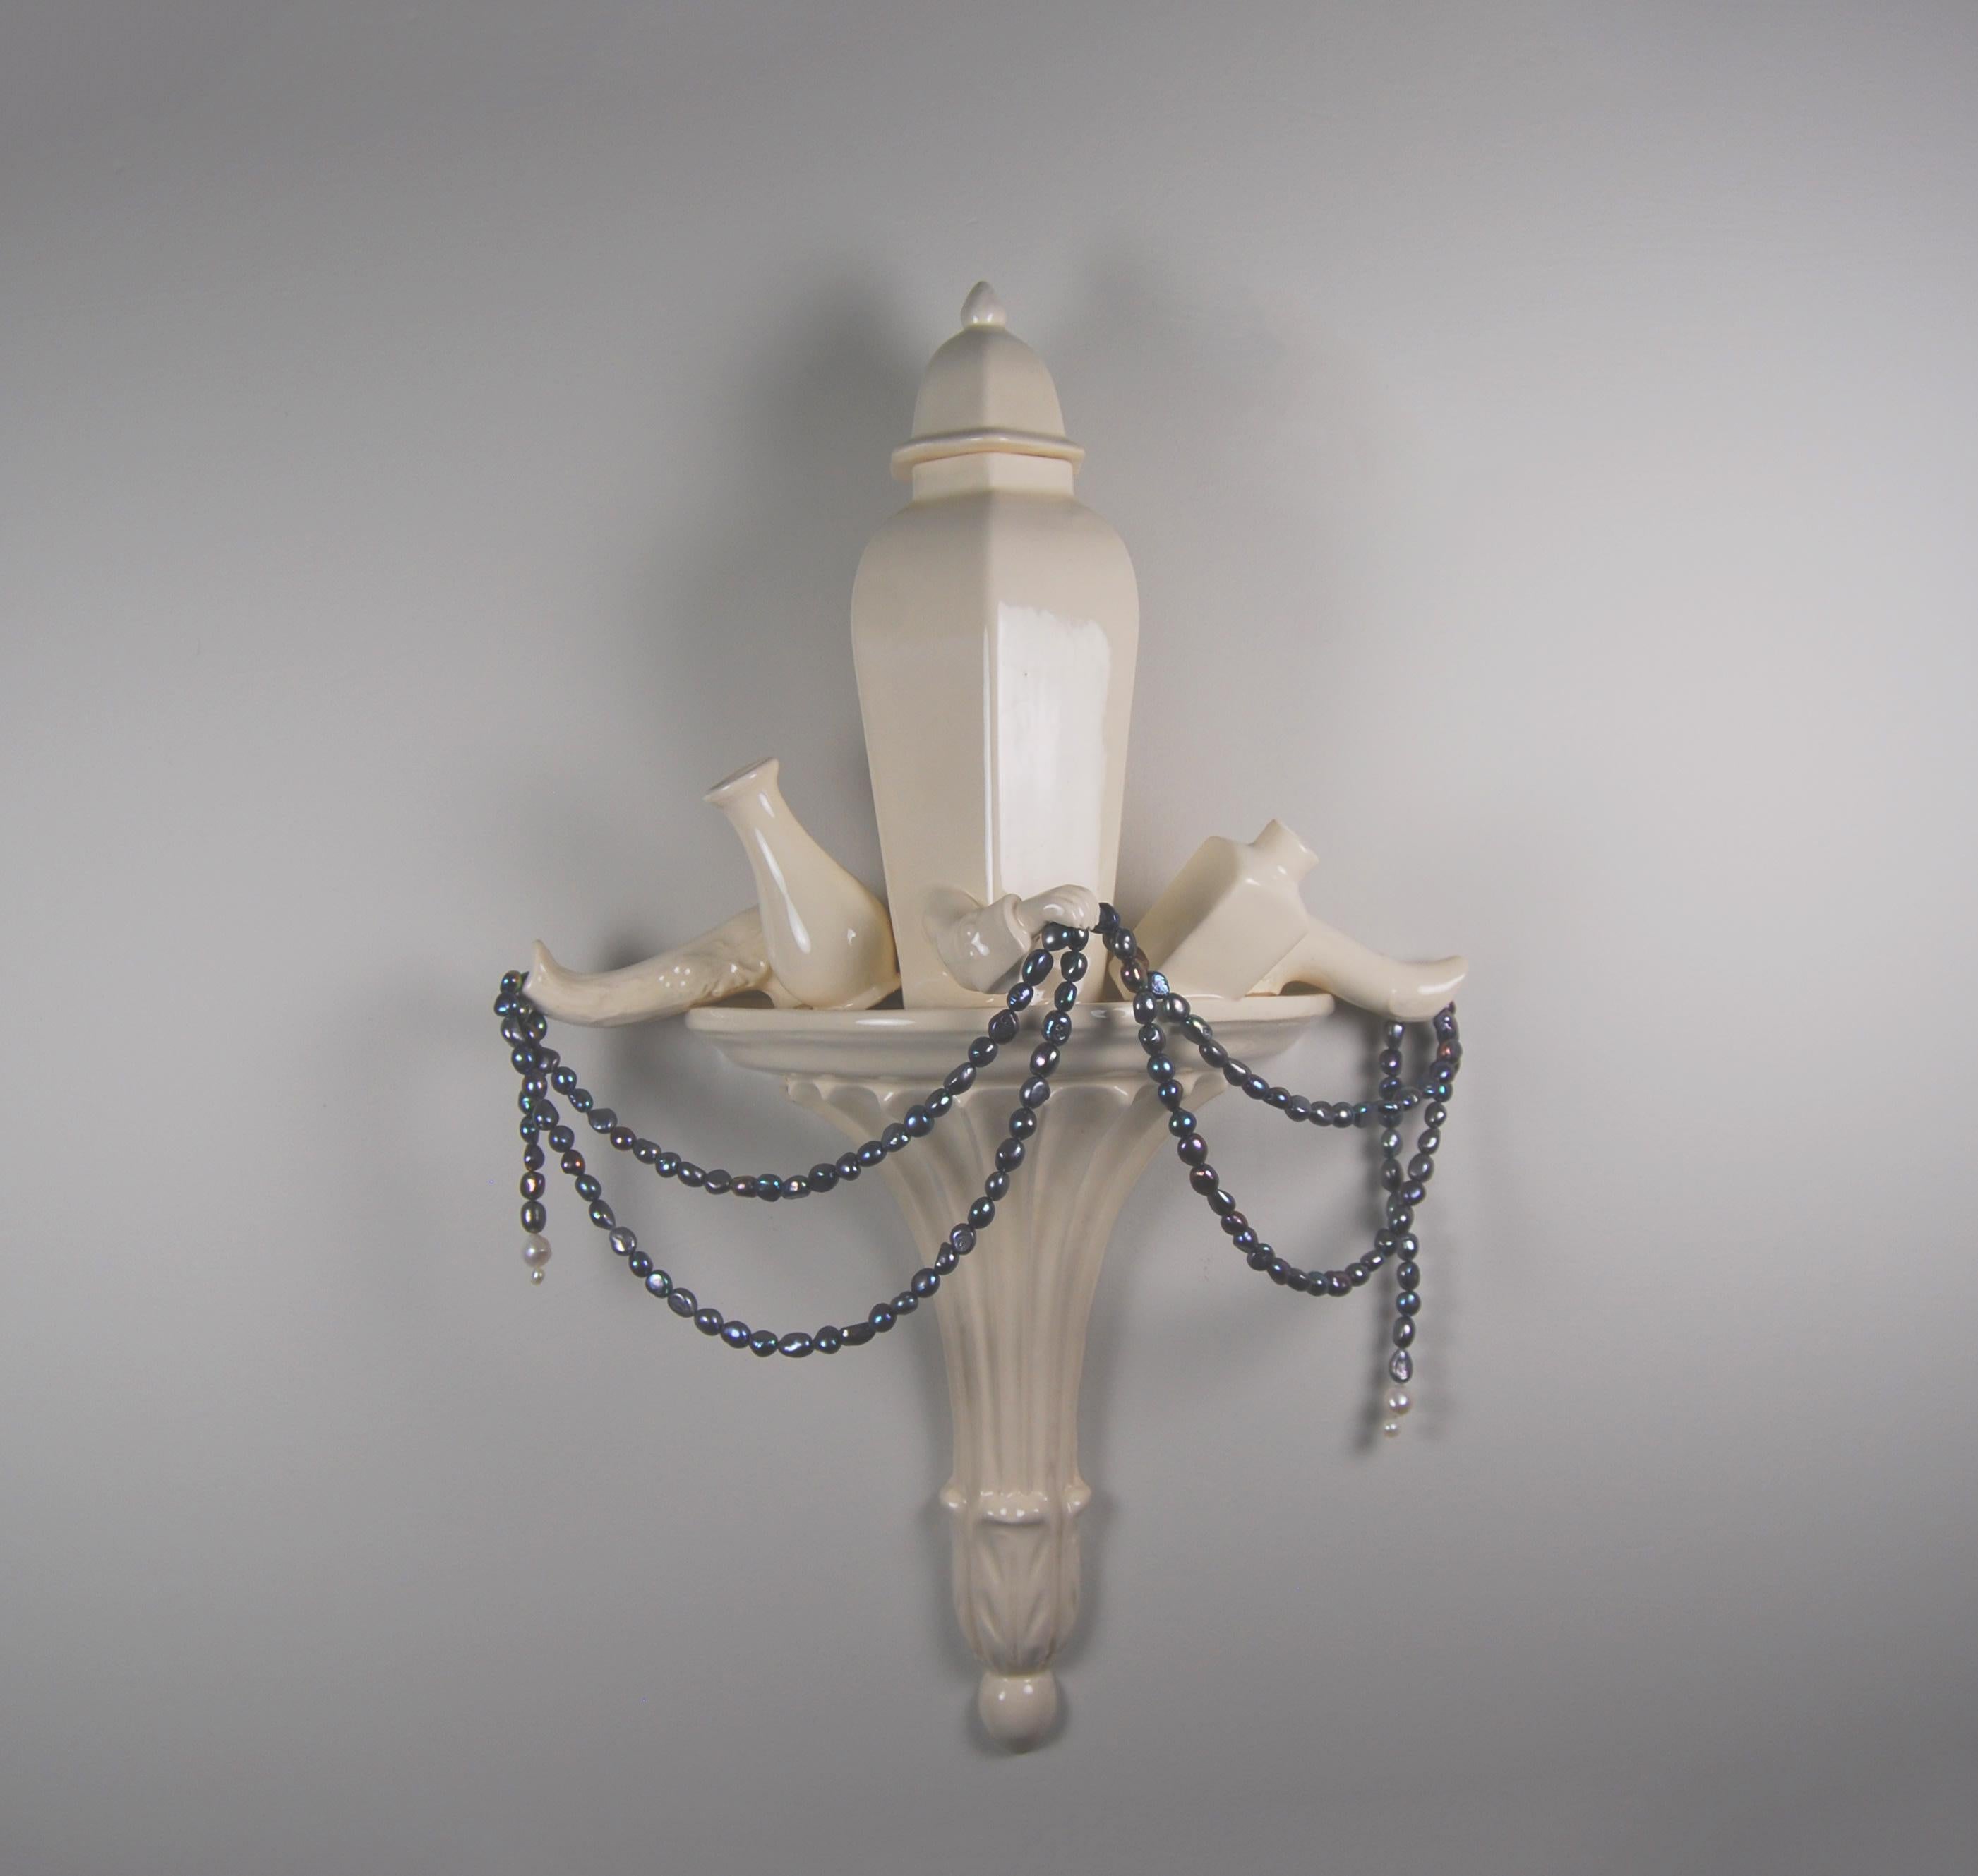 Abstract Sculpture Matt Smith - Cuillères blanches avec faïence et perles d'eau douce, 2021 